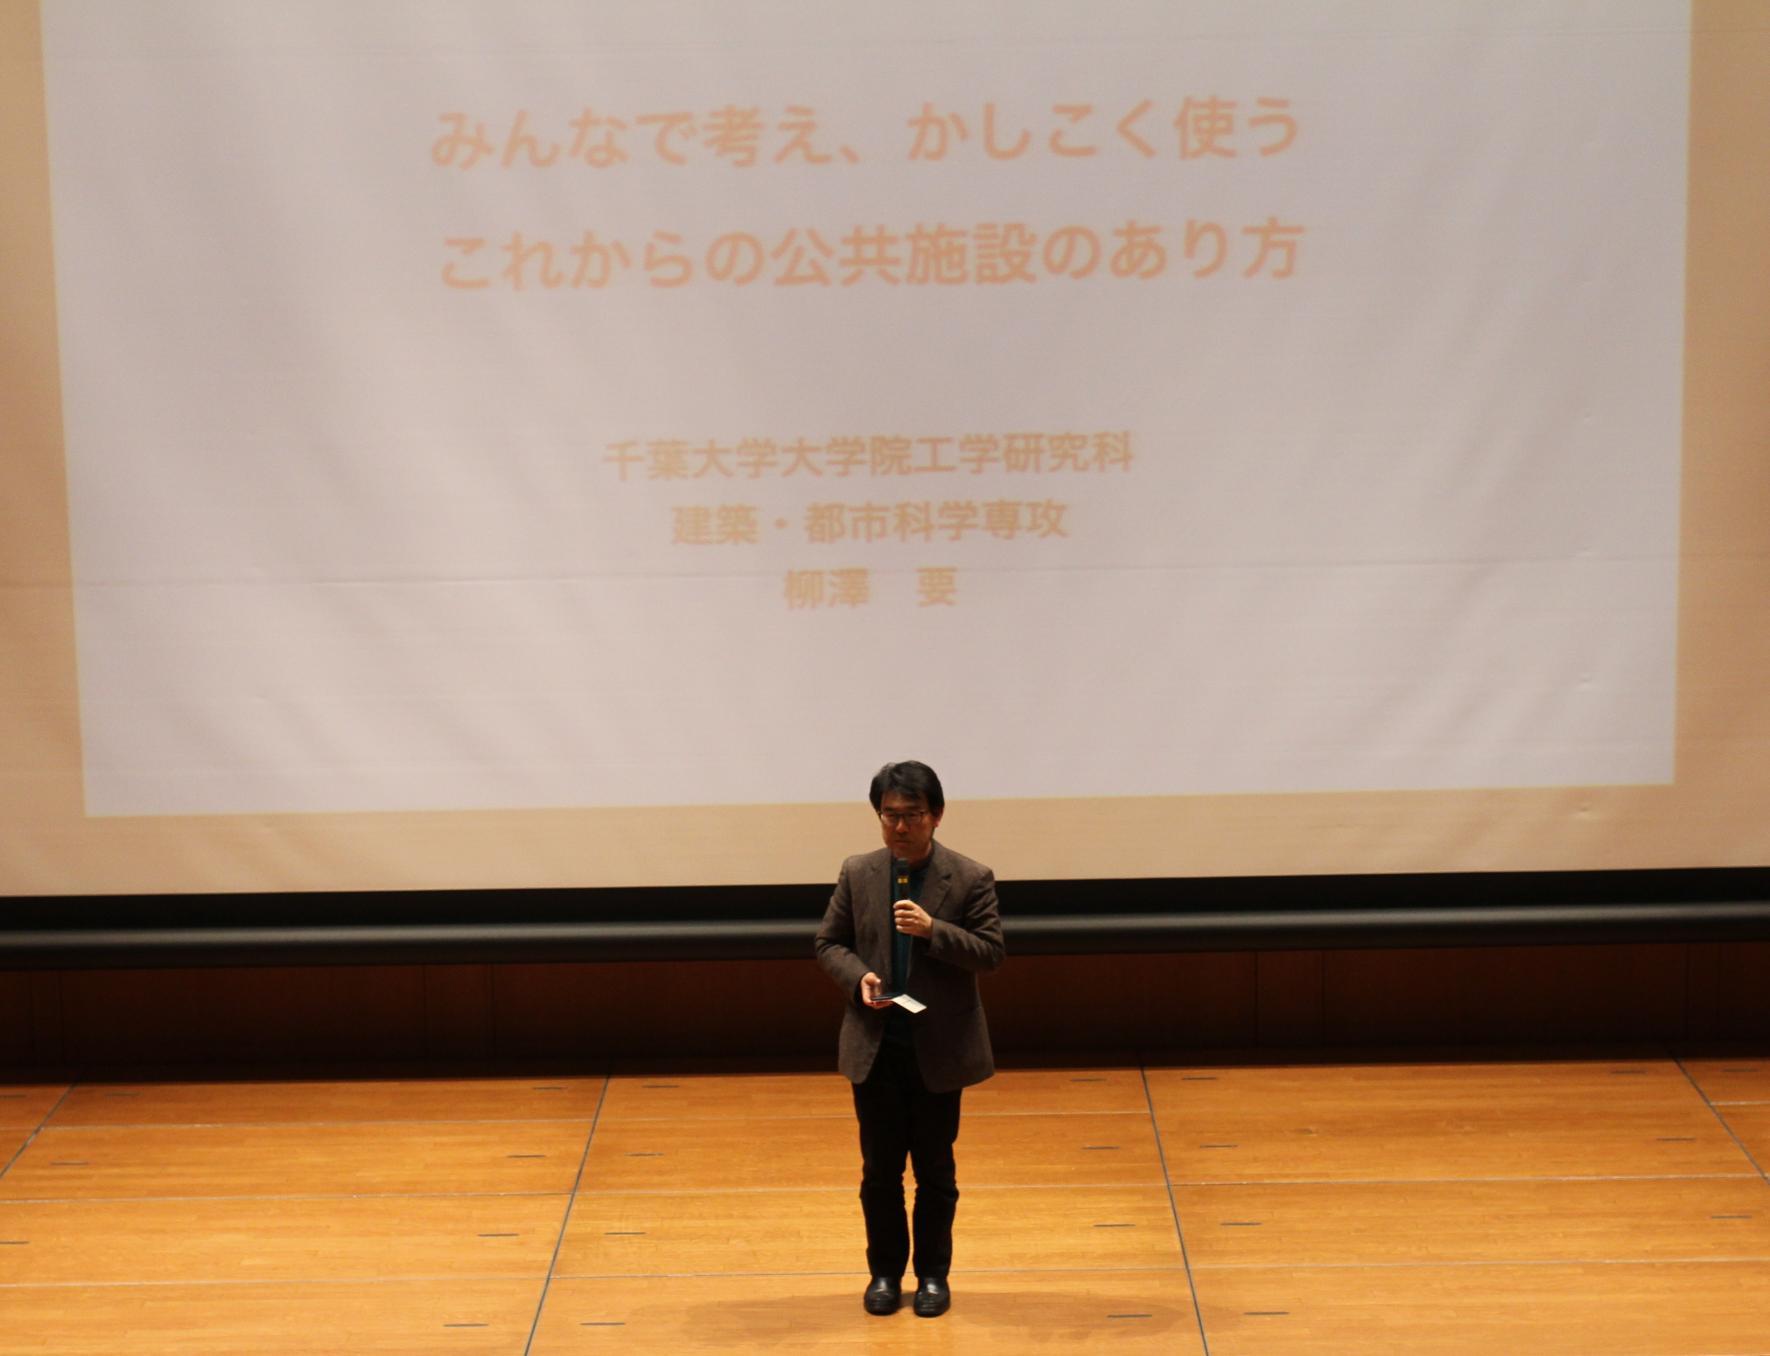 千葉大学大学院工学研究科 柳澤 要教授がマイクを持ち講演をしている写真